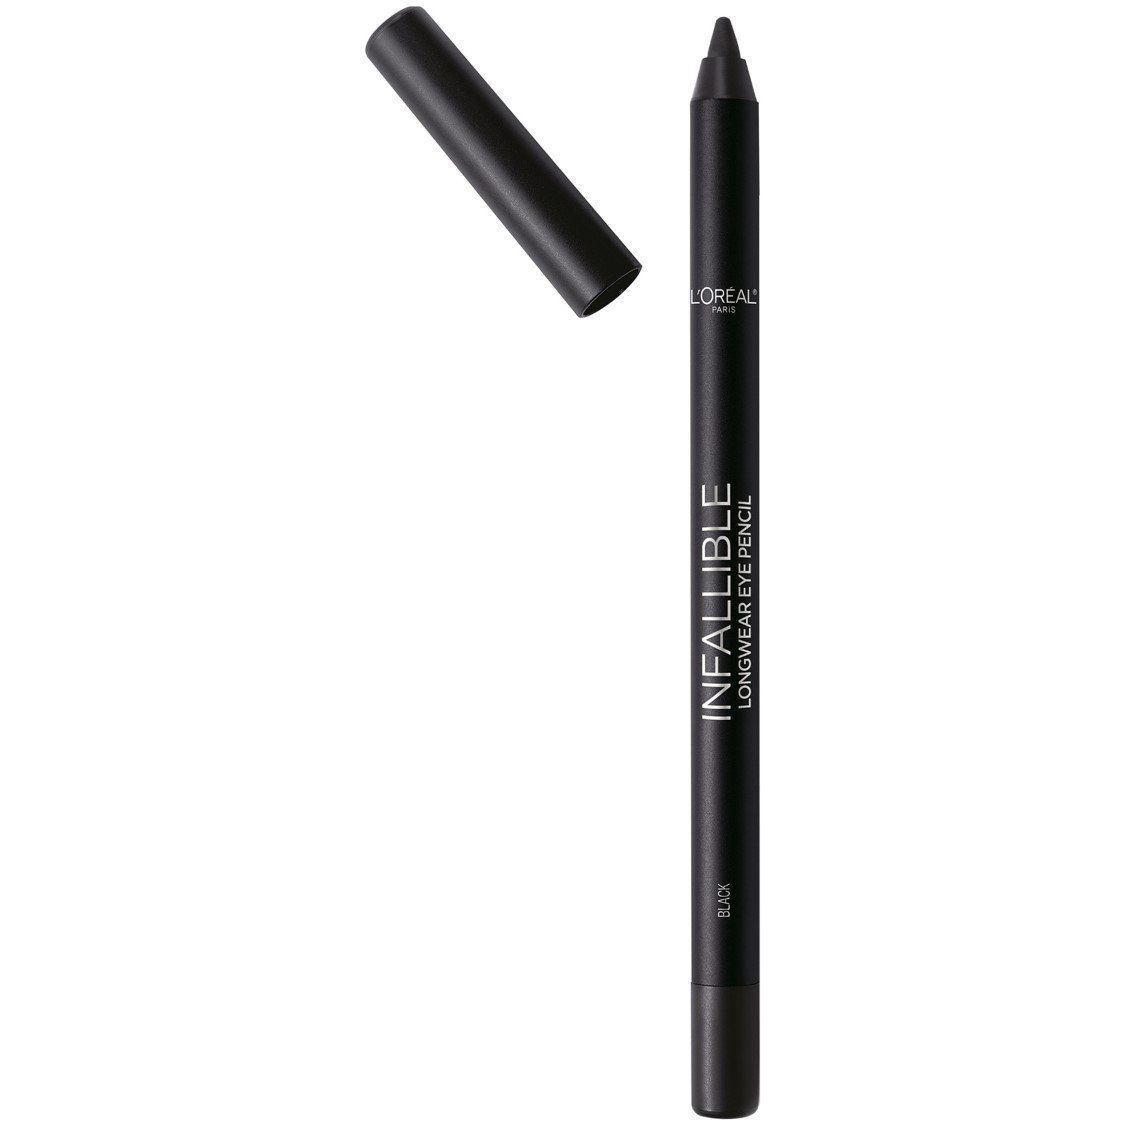 Eyeliner Makeup Long Lasting Waterproof Smudge Proof Black Eye Liner Pen 